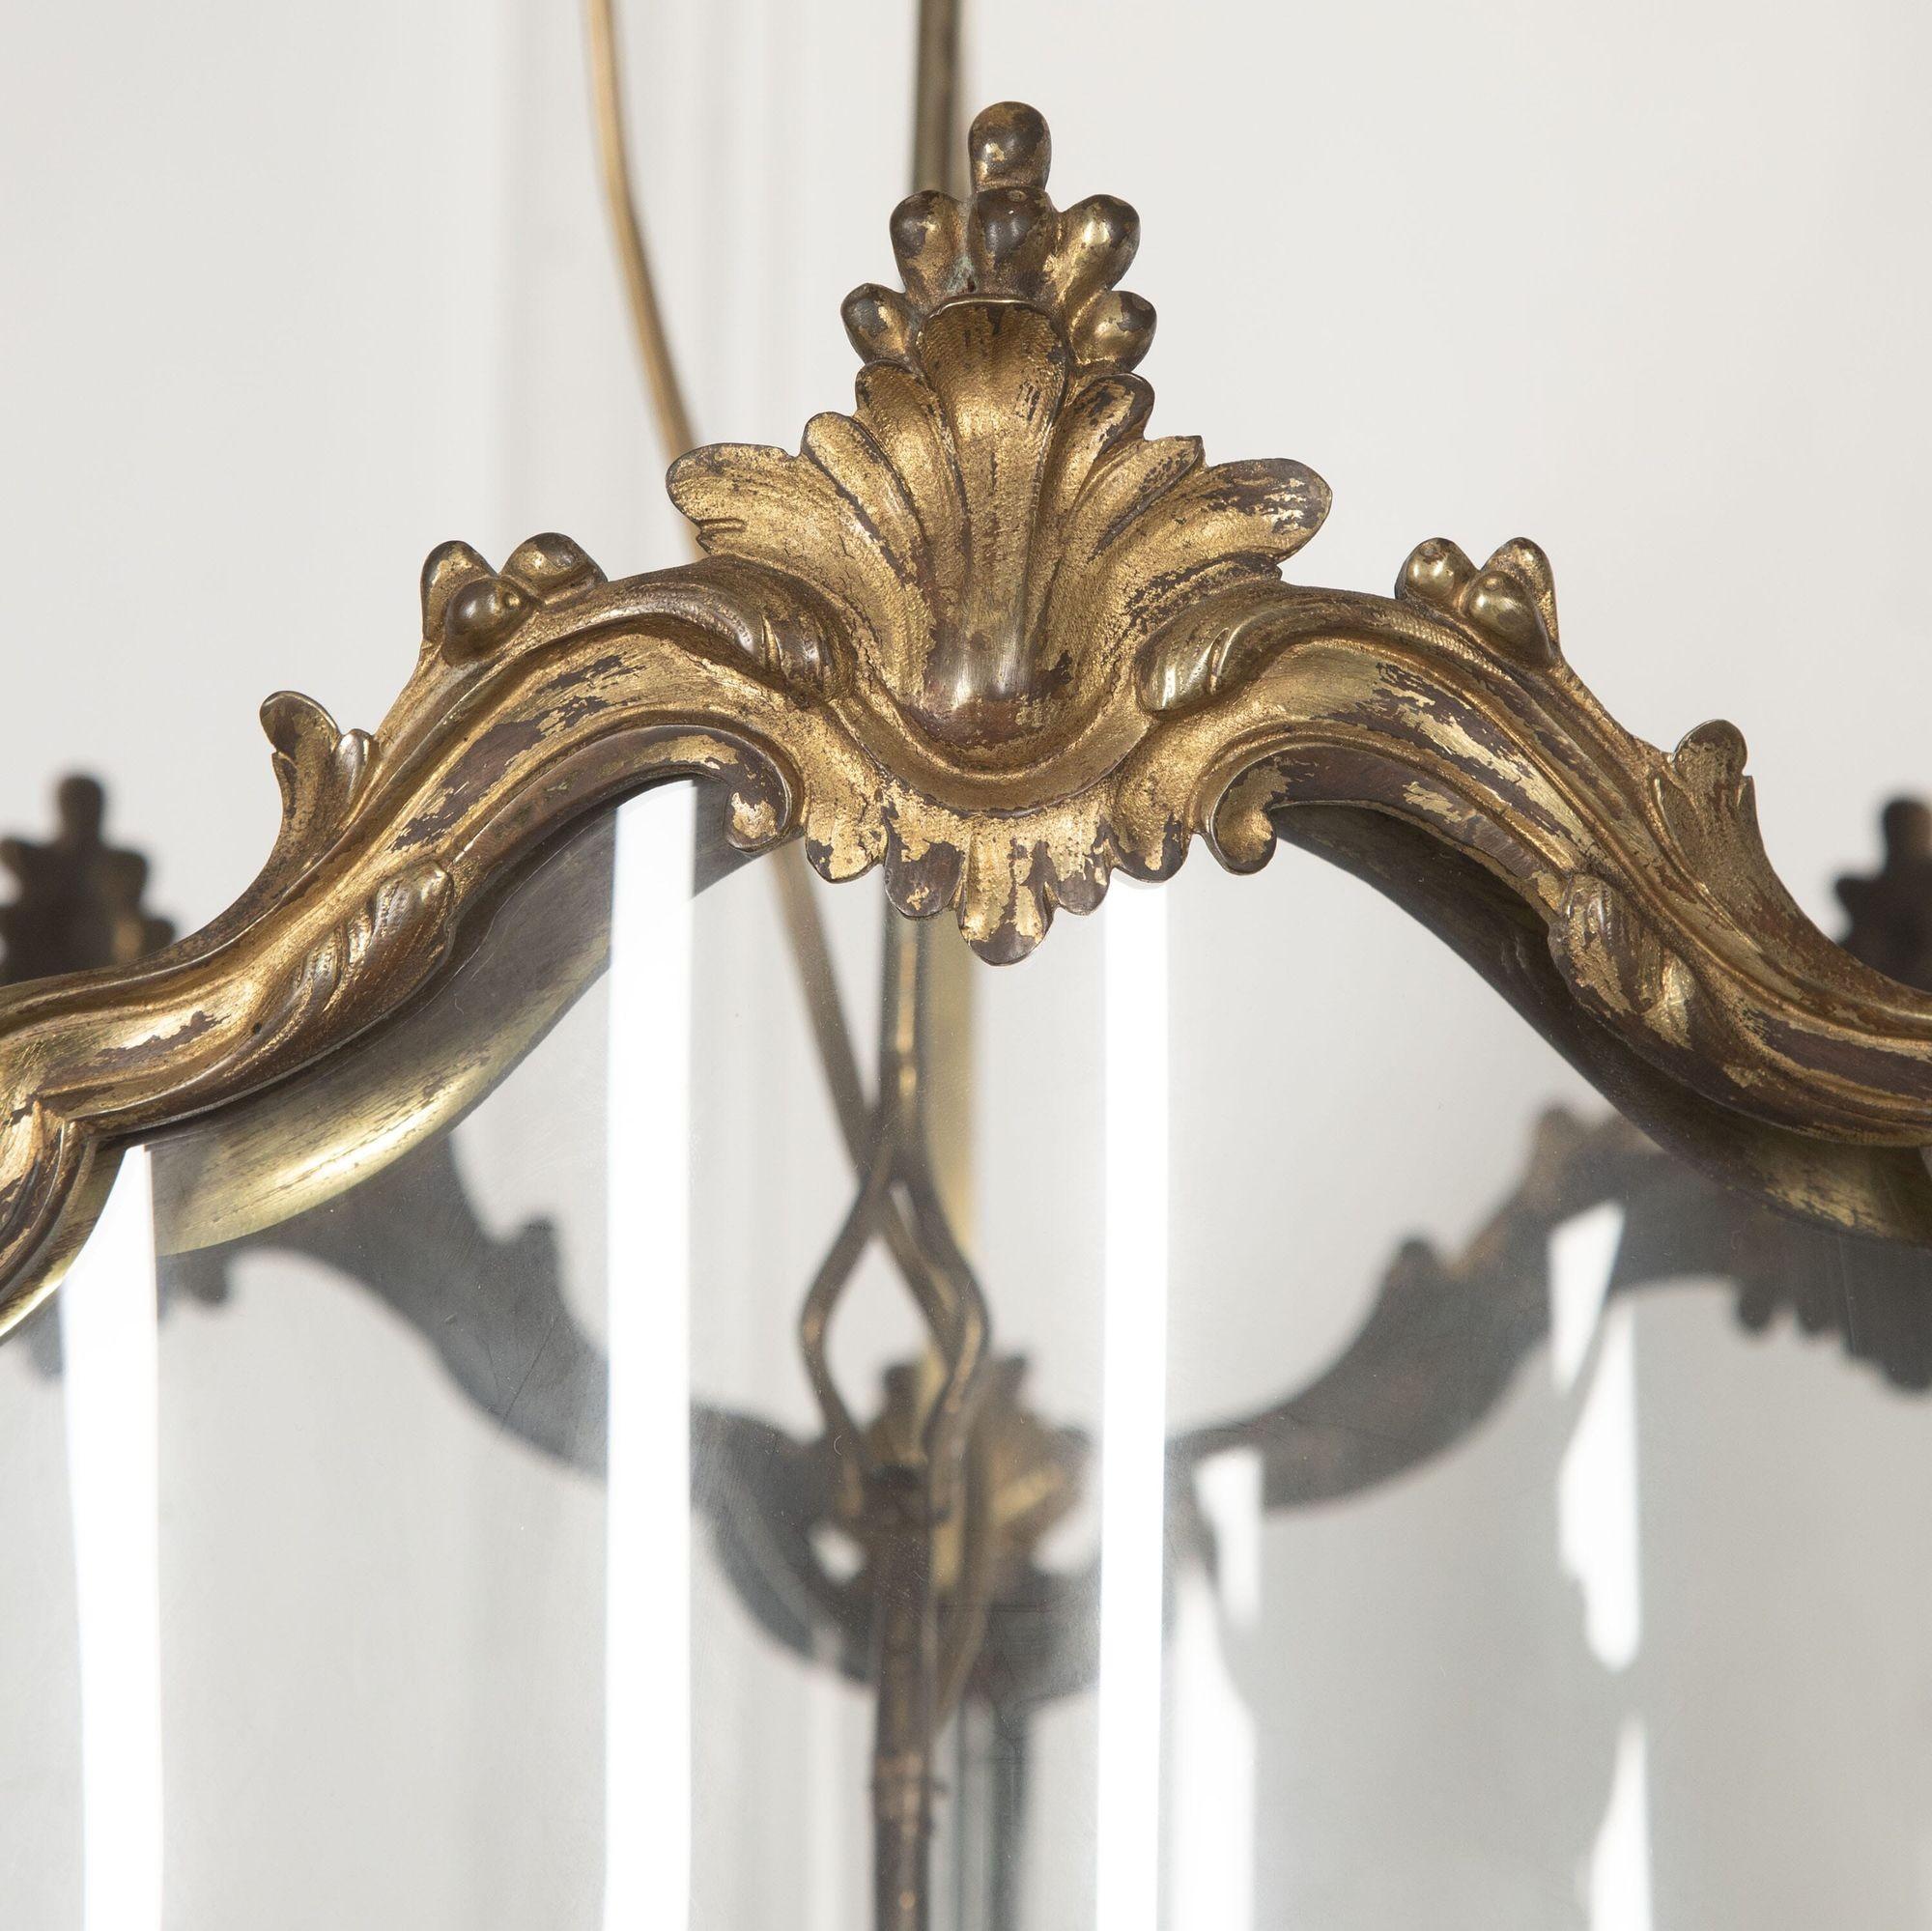 Grande lanterne de hall anglaise du XVIIIe siècle en bronze doré, avec un cadre finement moulé de forme serpentine.
Les panneaux de verre incurvés sont surmontés de feuilles d'acanthe ciselées et reposent sur des épis de faîtage en forme de feuilles